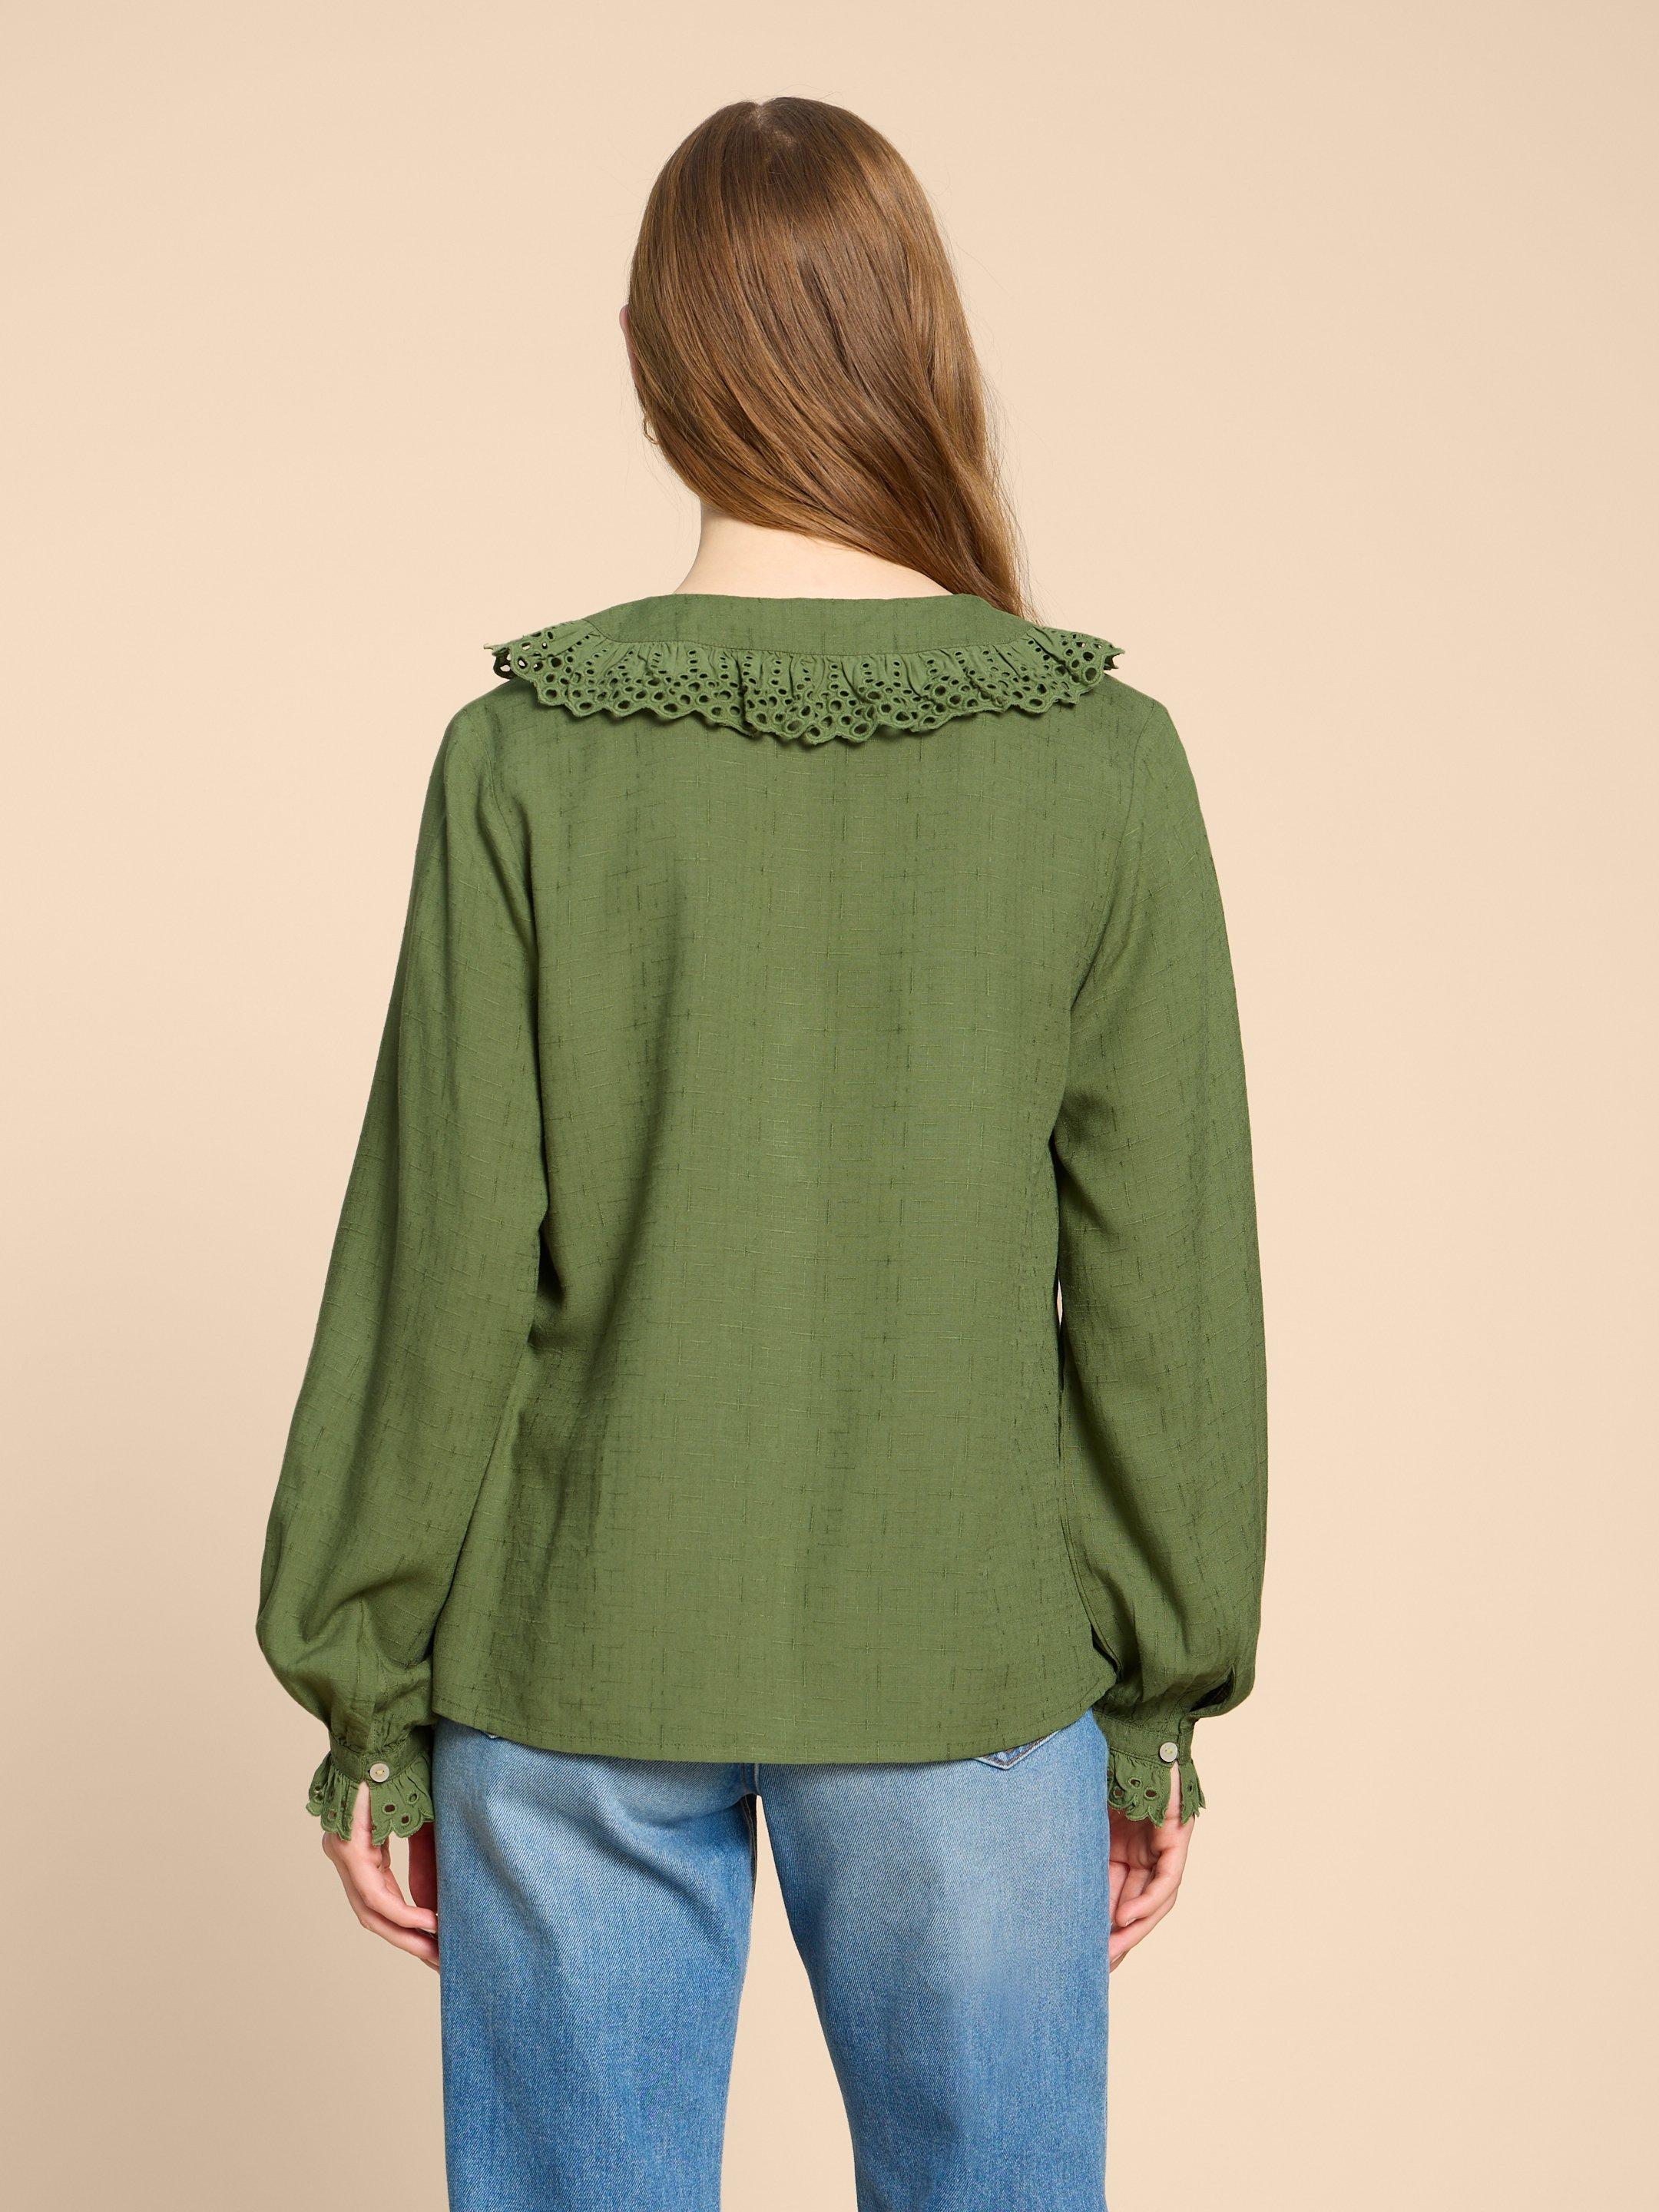 Lara Broderie Shirt in MID GREEN - MODEL BACK